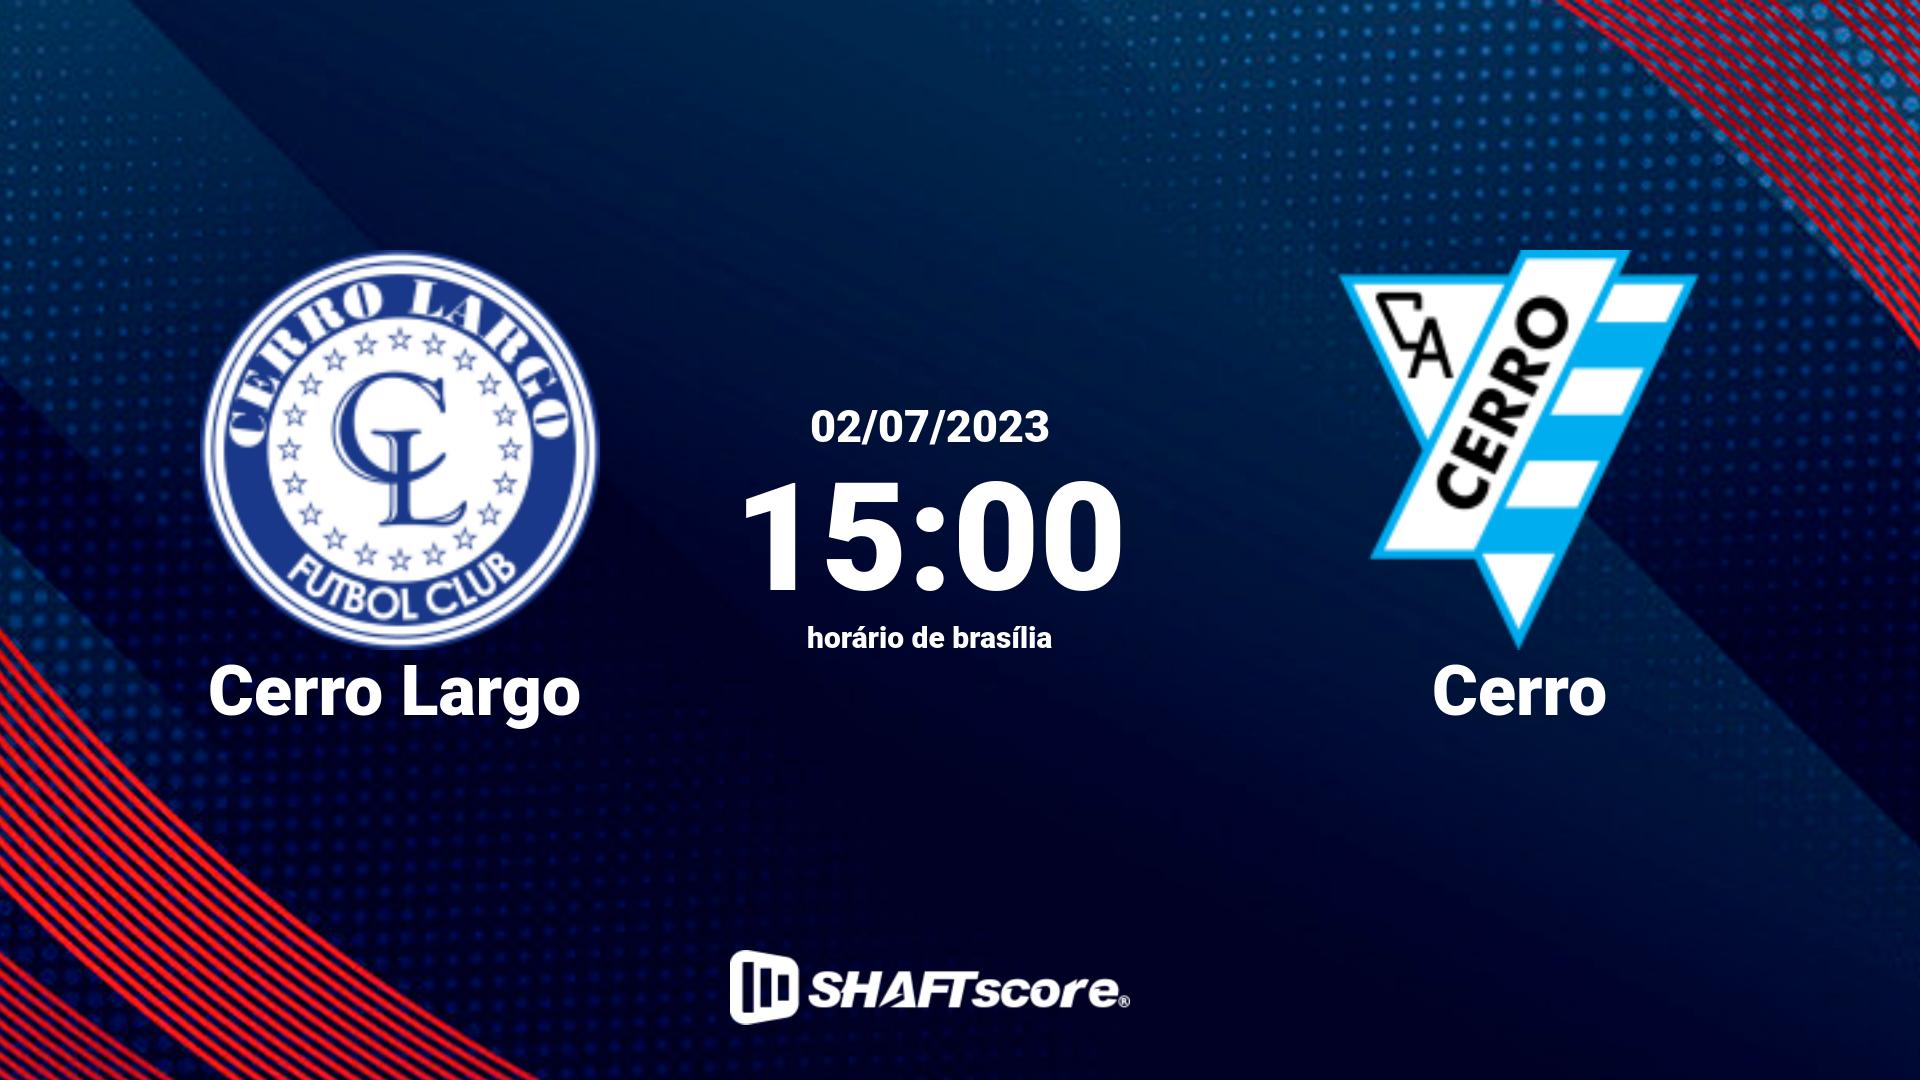 Estatísticas do jogo Cerro Largo vs Cerro 02.07 15:00